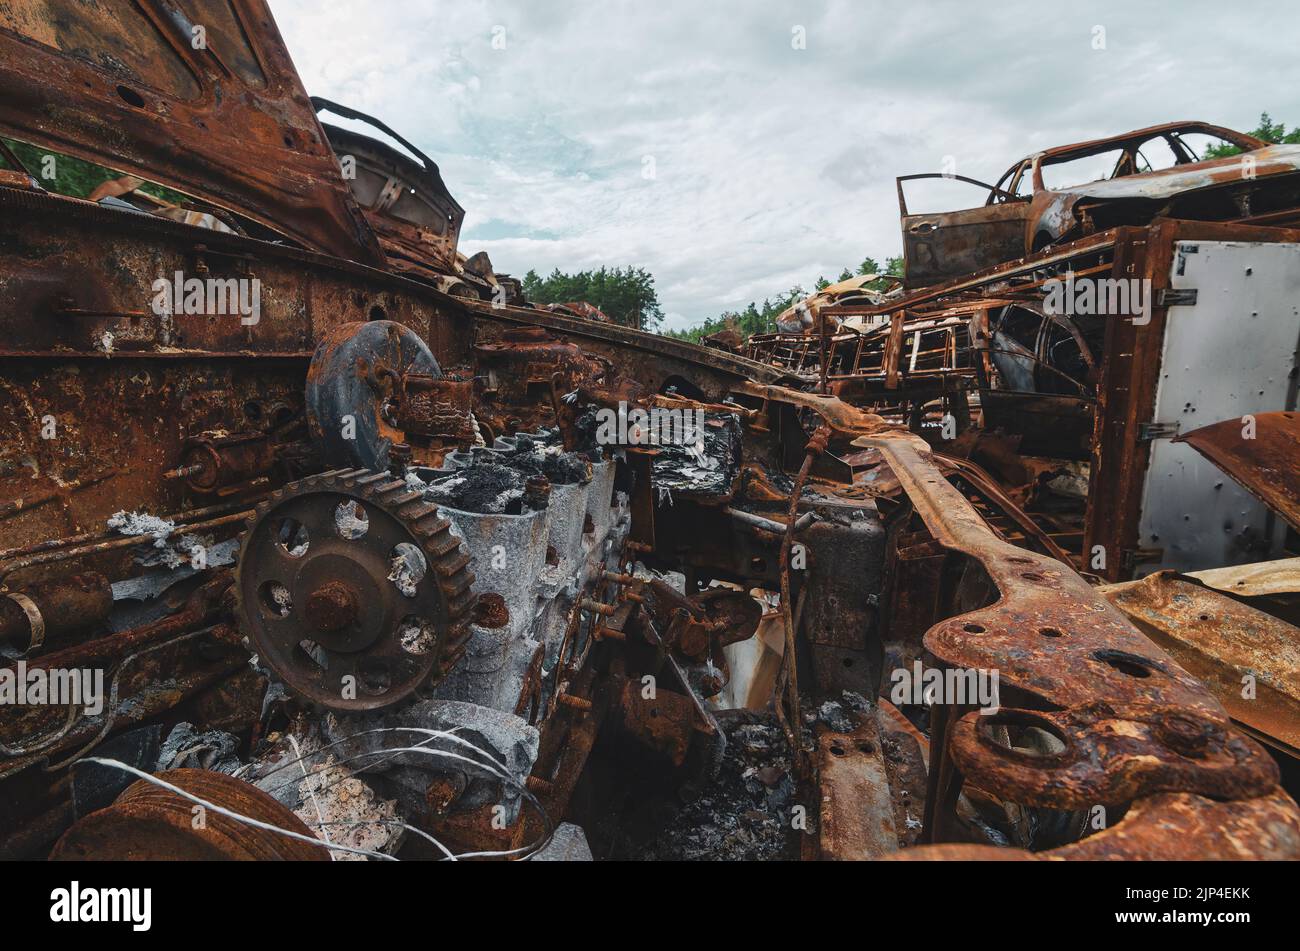 Cimetière de voitures en rouillé et brûlées jetées après la guerre près de Kiev, Ukraine Banque D'Images